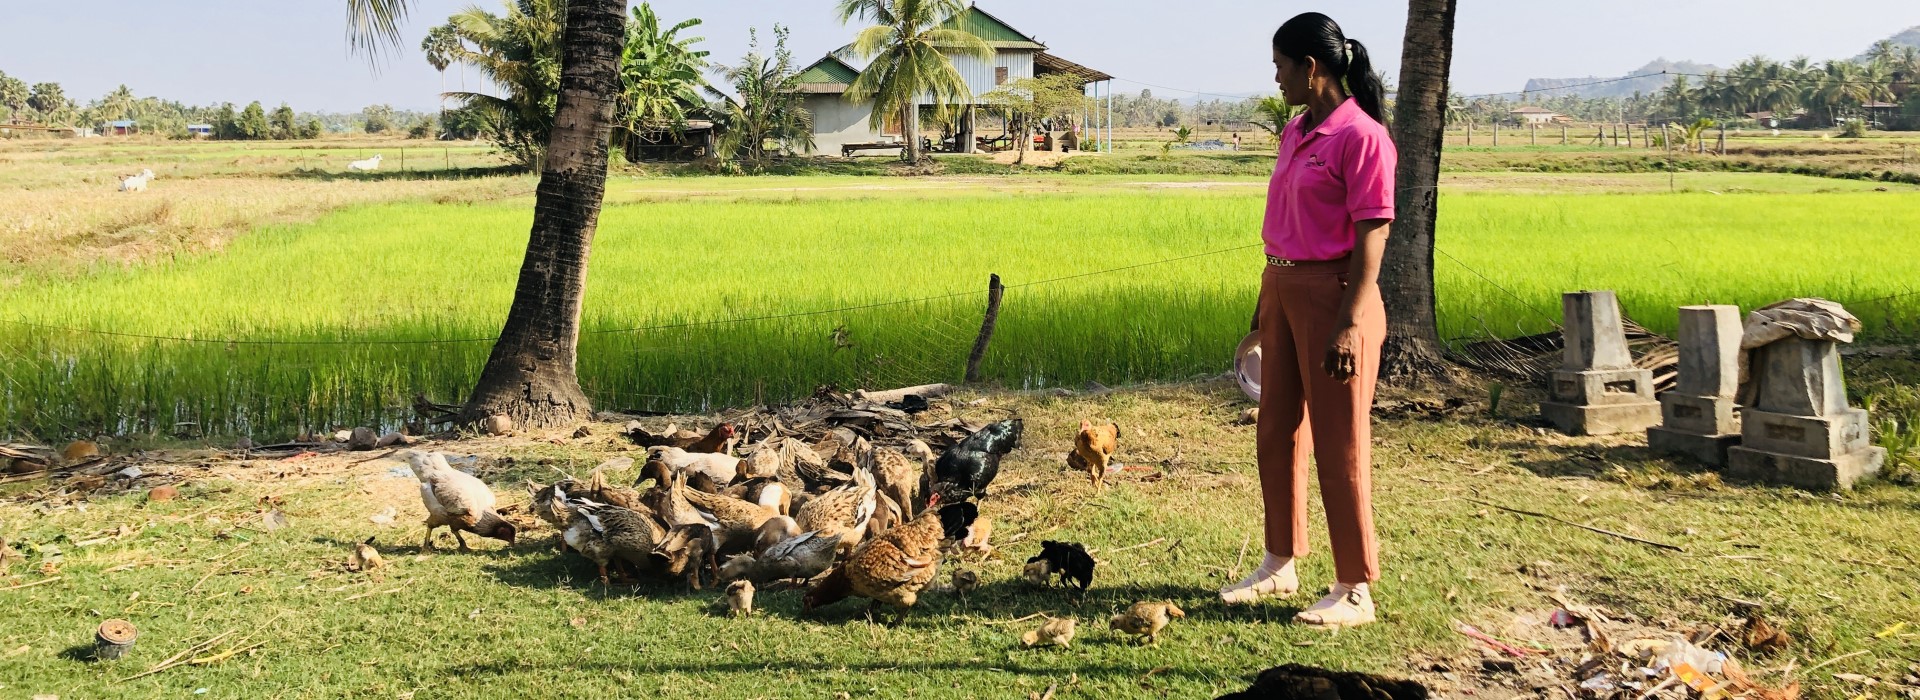 Eine Frau steht auf einer Wiese inmitten von Hühnern, die Körner vom Boden picken. Im Hintergrund sind Felder und einzelne Gebäude zu sehen.